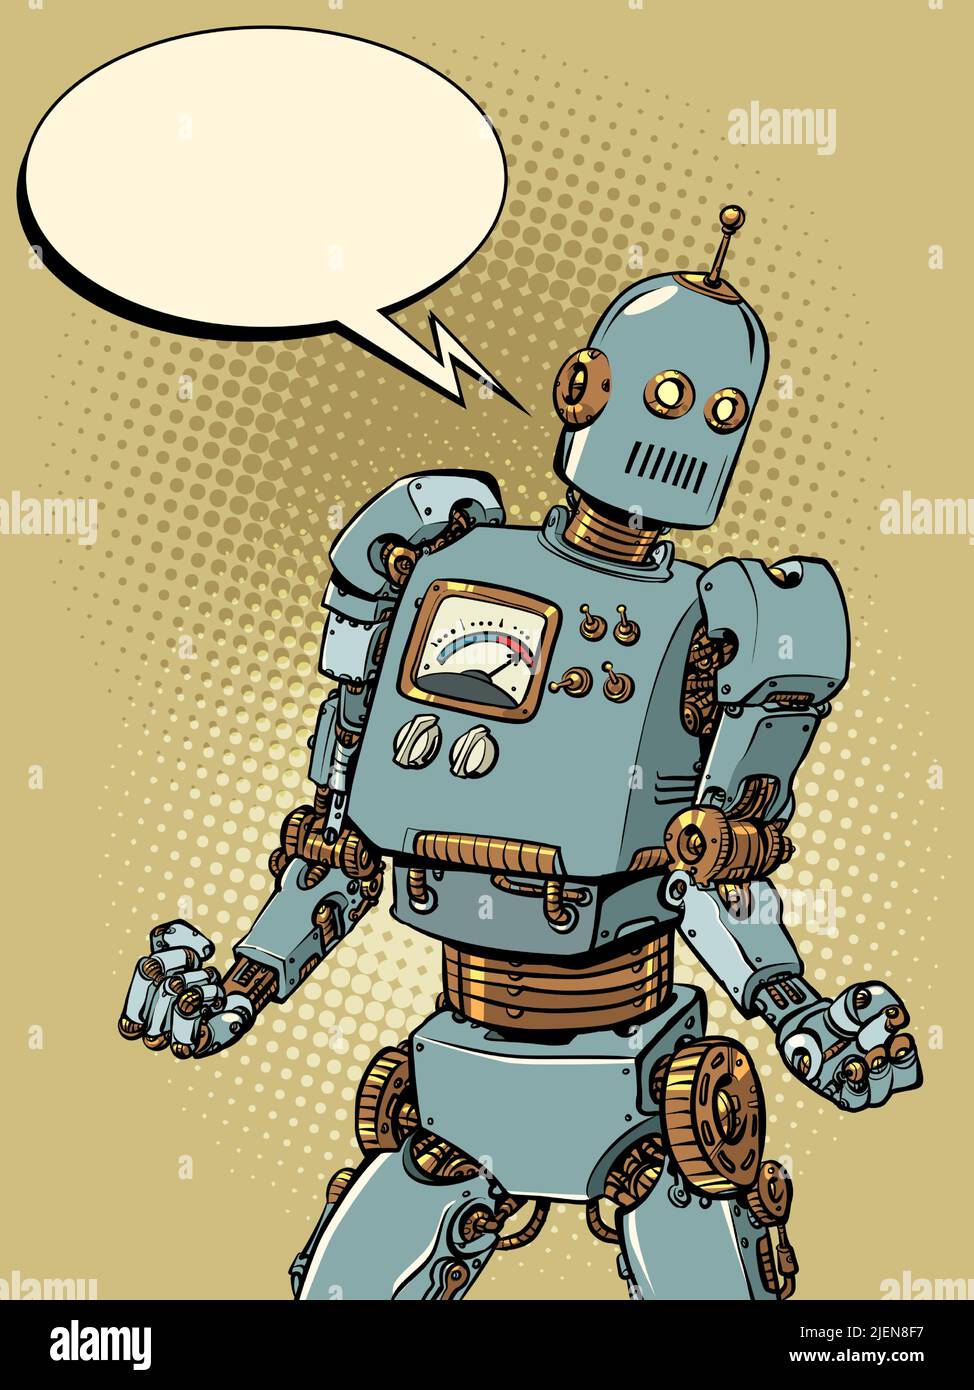 potente robot con poderosos brazos en la postura de los culturistas, inteligencia artificial, revolución técnica. pop arte retro vector ilustración kitsch vintage Ilustración del Vector